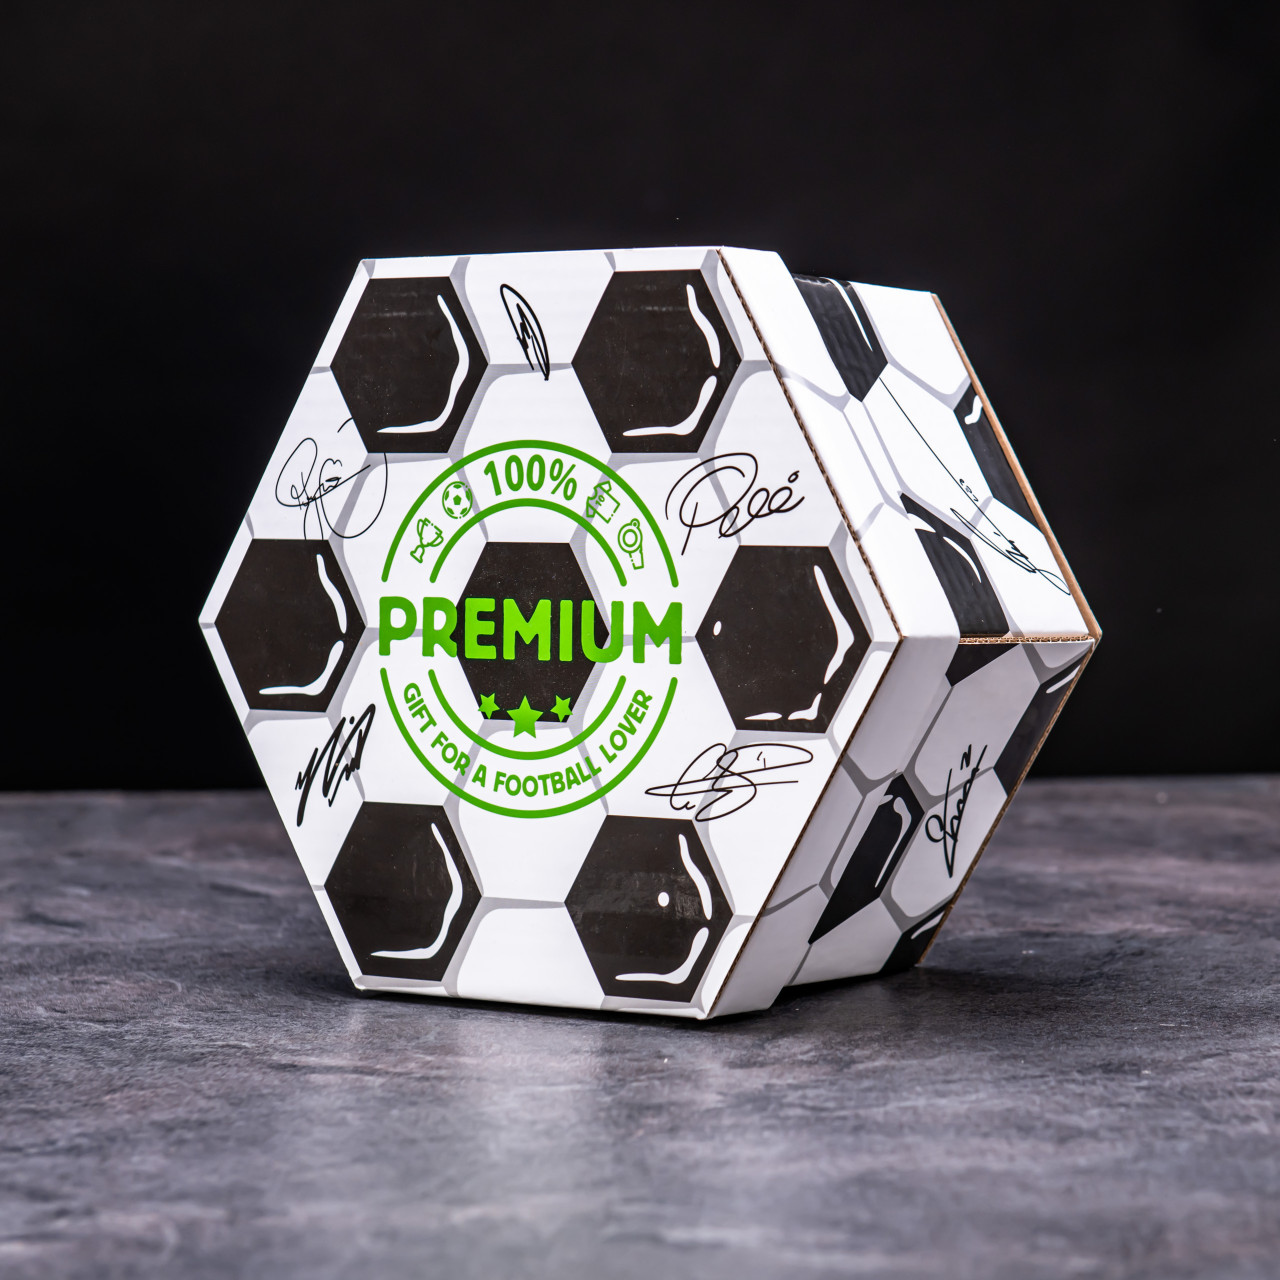 Hexagon plný luxusních popcornů - Fotbalový